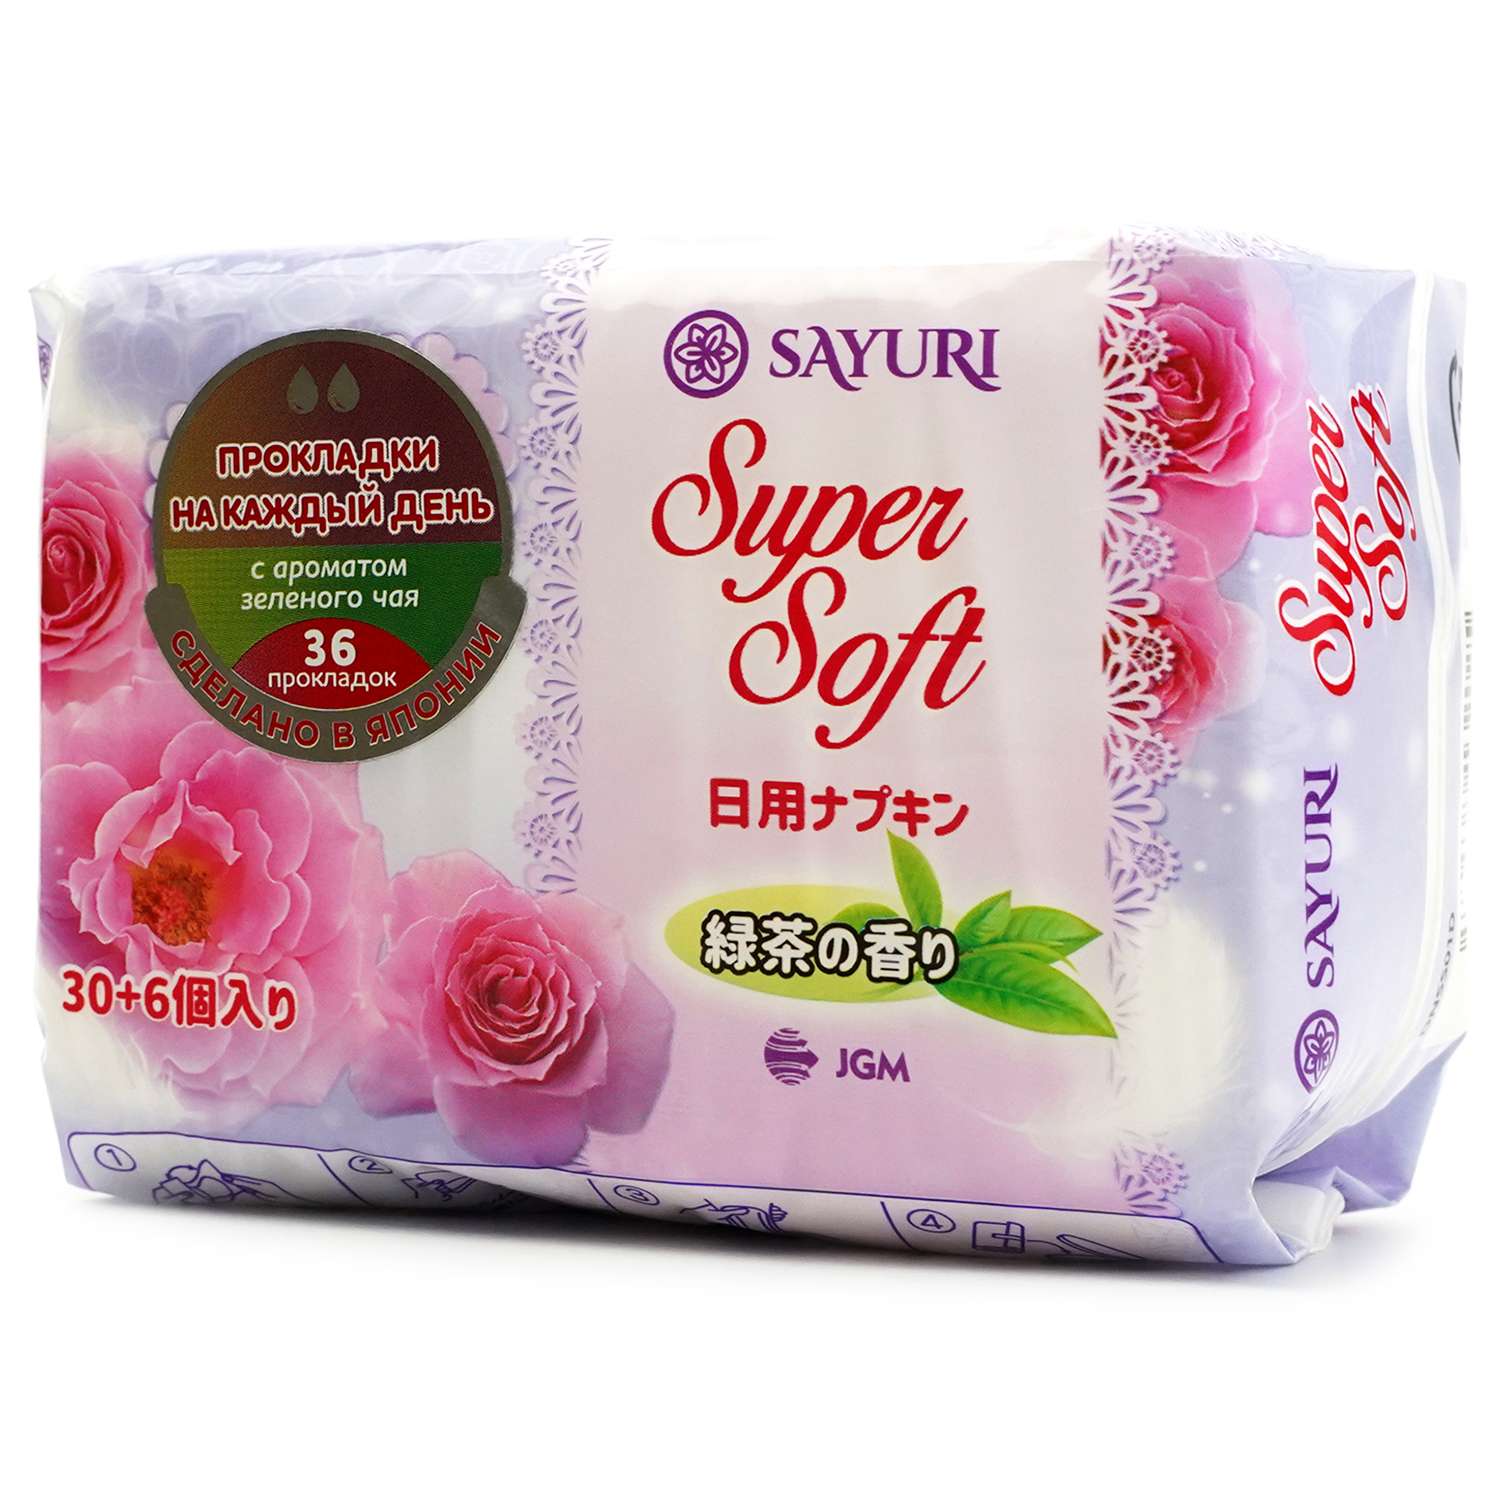 Прокладки SAYURI Super Soft ежедневные аромат зеленого чая 36шт DNSS01D - фото 1